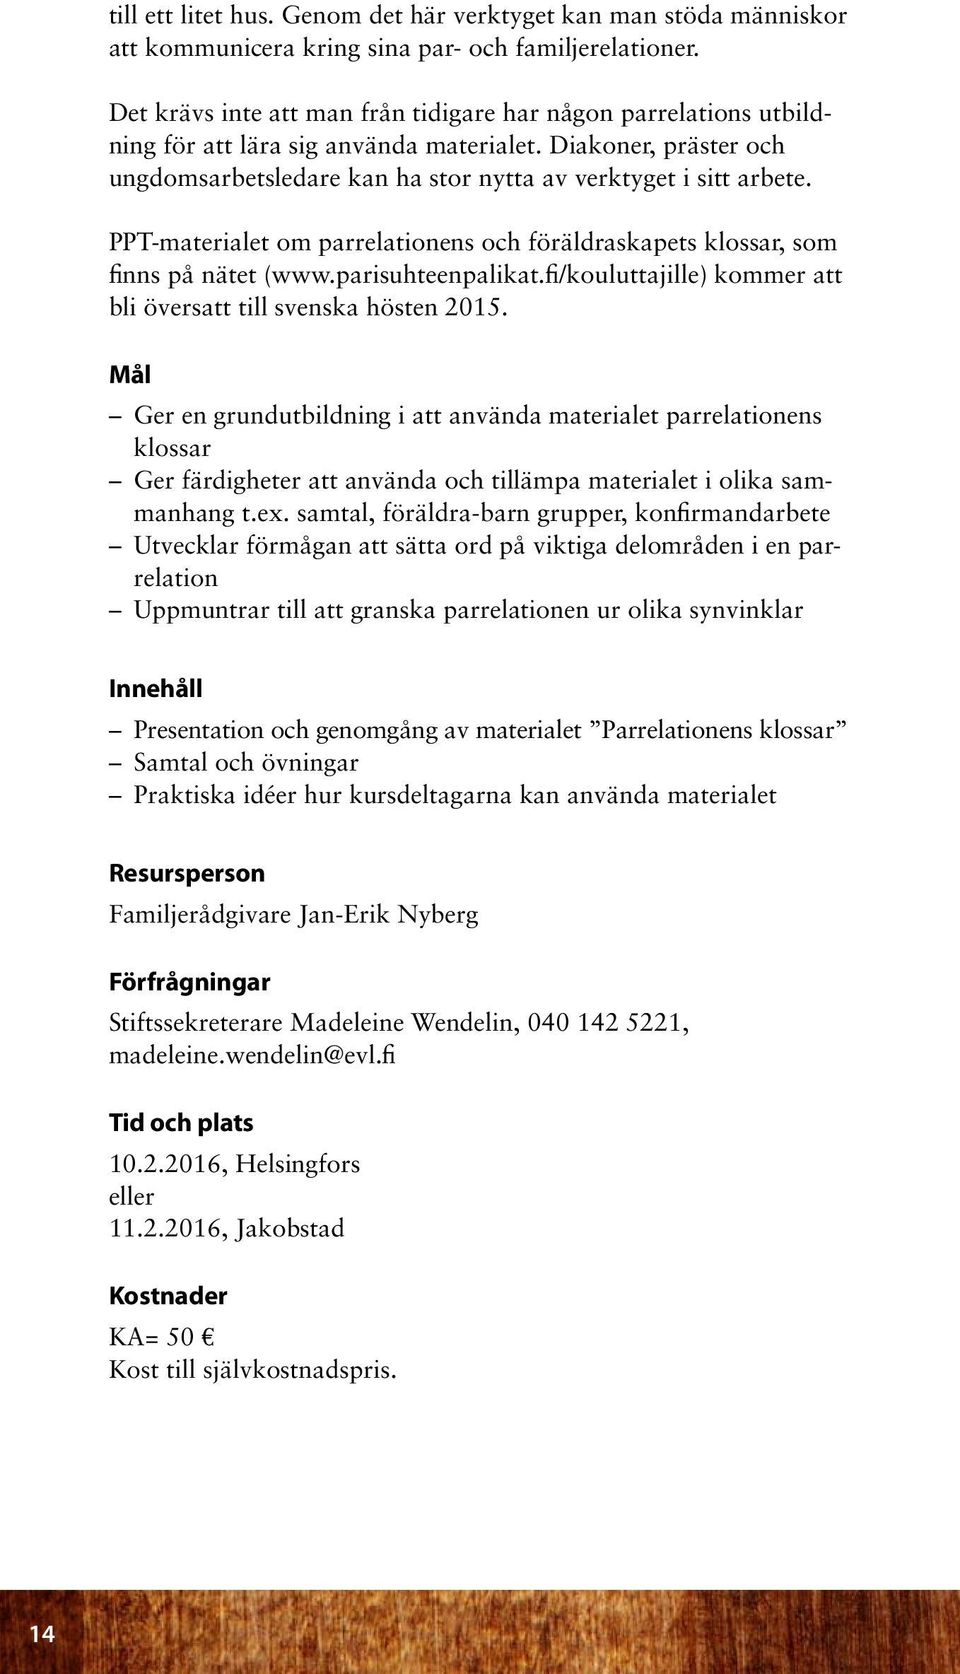 PPT-materialet om parrelationens och föräldraskapets klossar, som finns på nätet (www.parisuhteenpalikat.fi/kouluttajille) kommer att bli översatt till svenska hösten 2015.